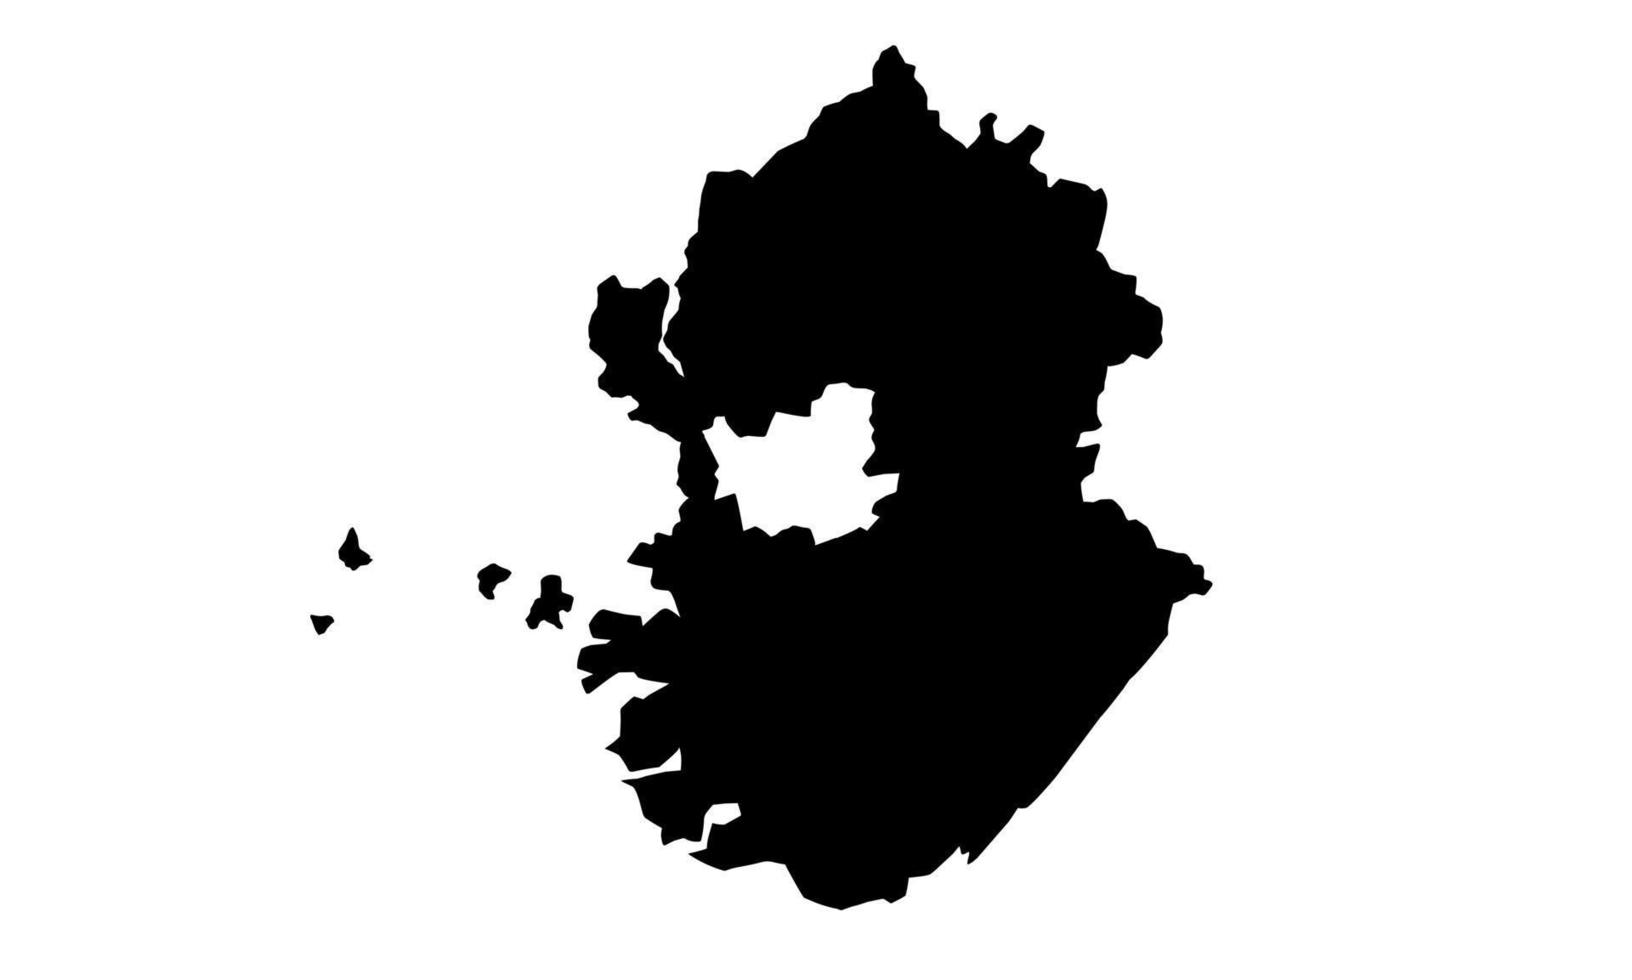 Gyeonggi-Karte schwarze Silhouette auf weißem Hintergrund vektor